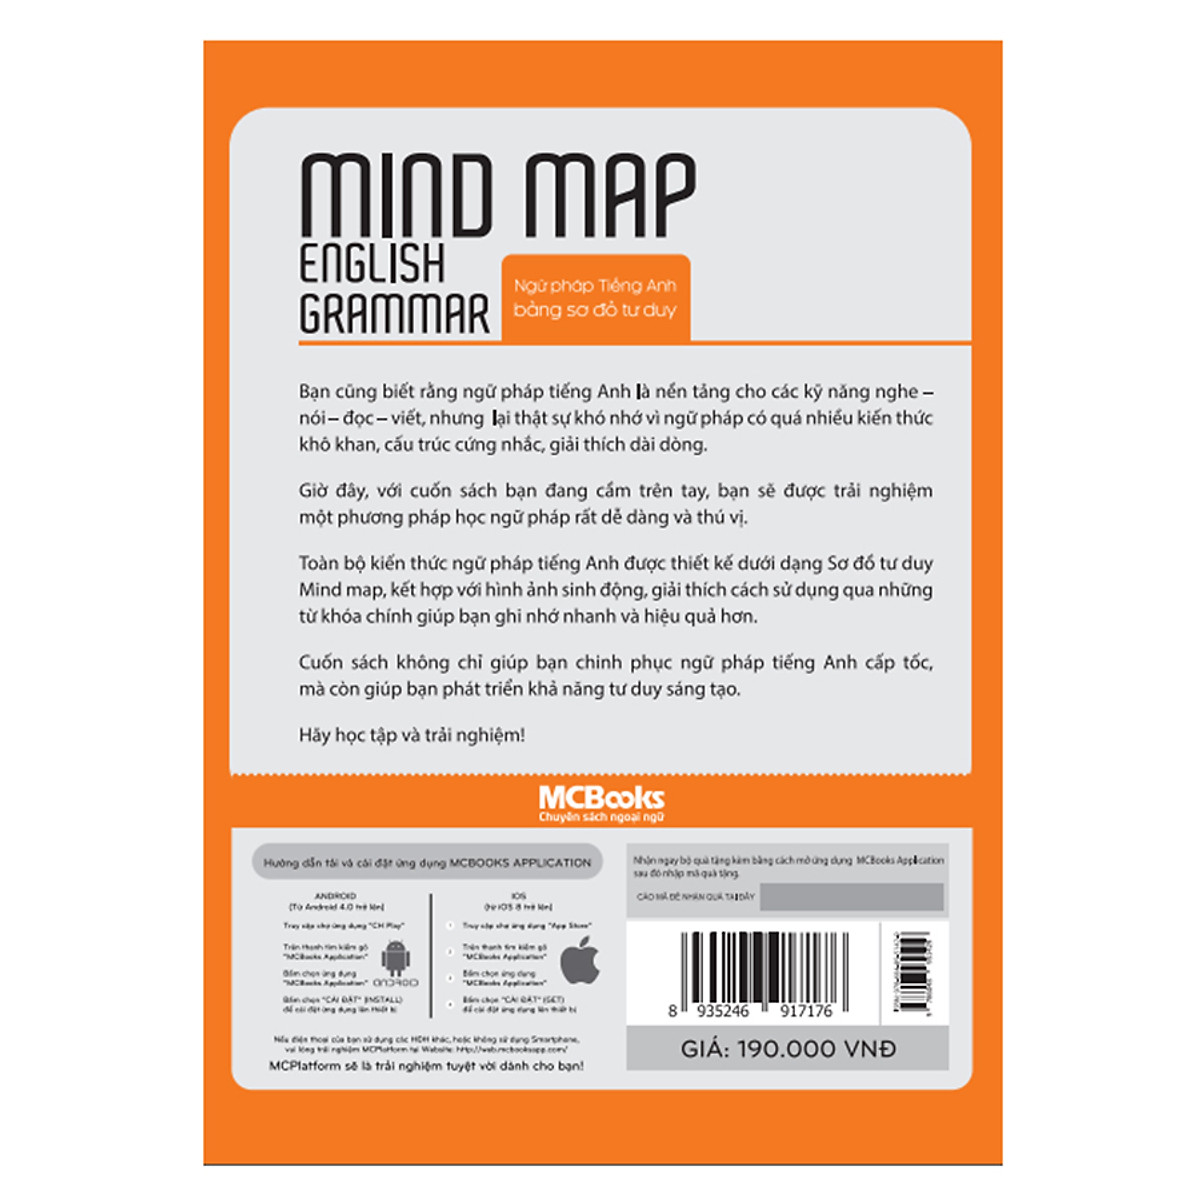 Mindmap English Grammar - Ngữ Pháp Tiếng Anh Bằng Sơ Đồ Tư Duy – MinhAnBooks